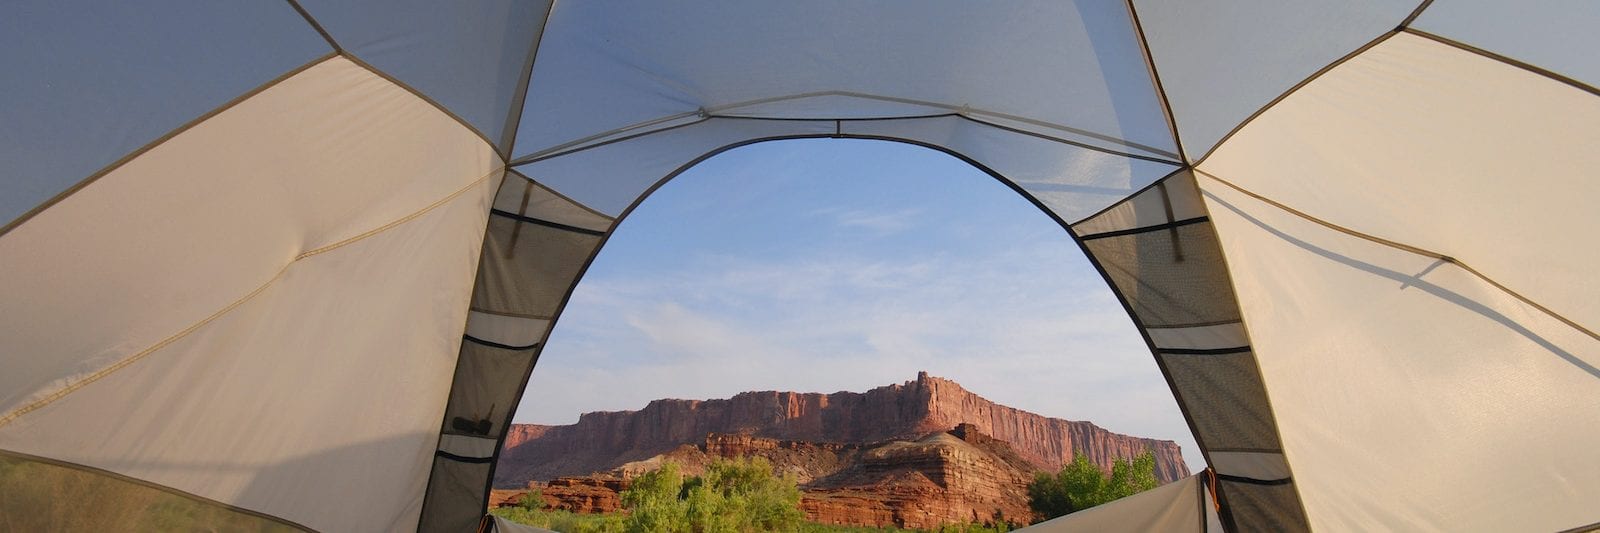 Utah Tent Camping National Park